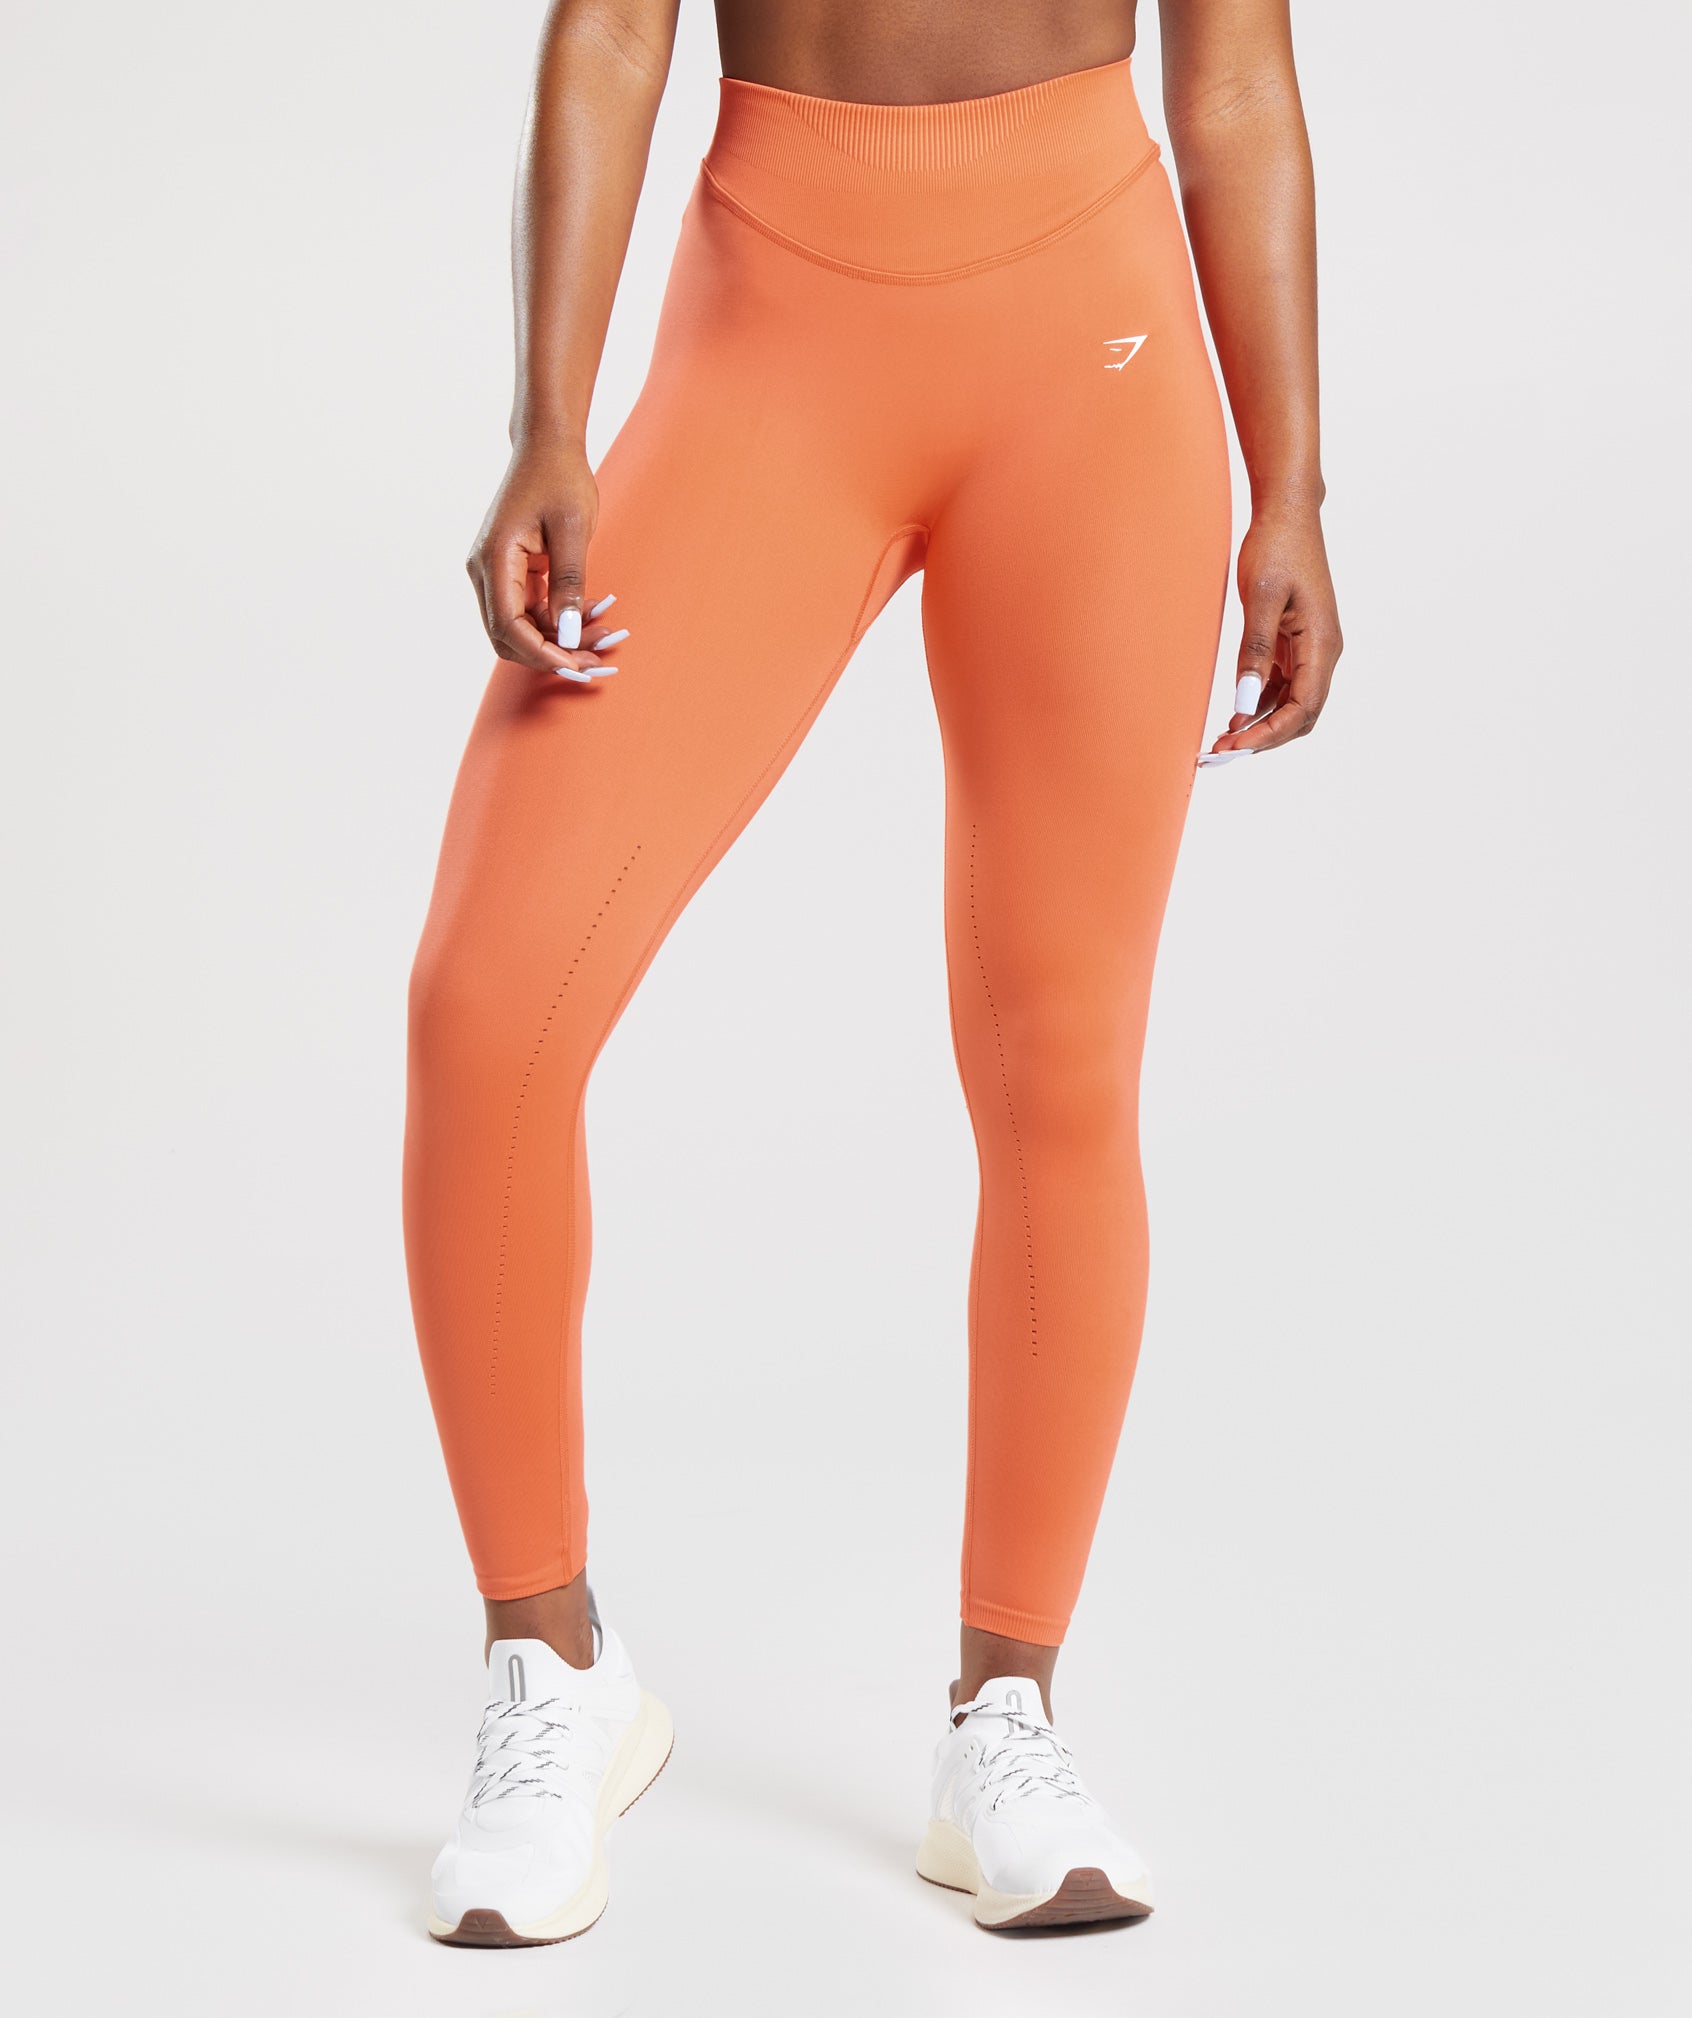 Gymshark Apex Seamless High Rise Leggings - Papaya Orange/Apricot